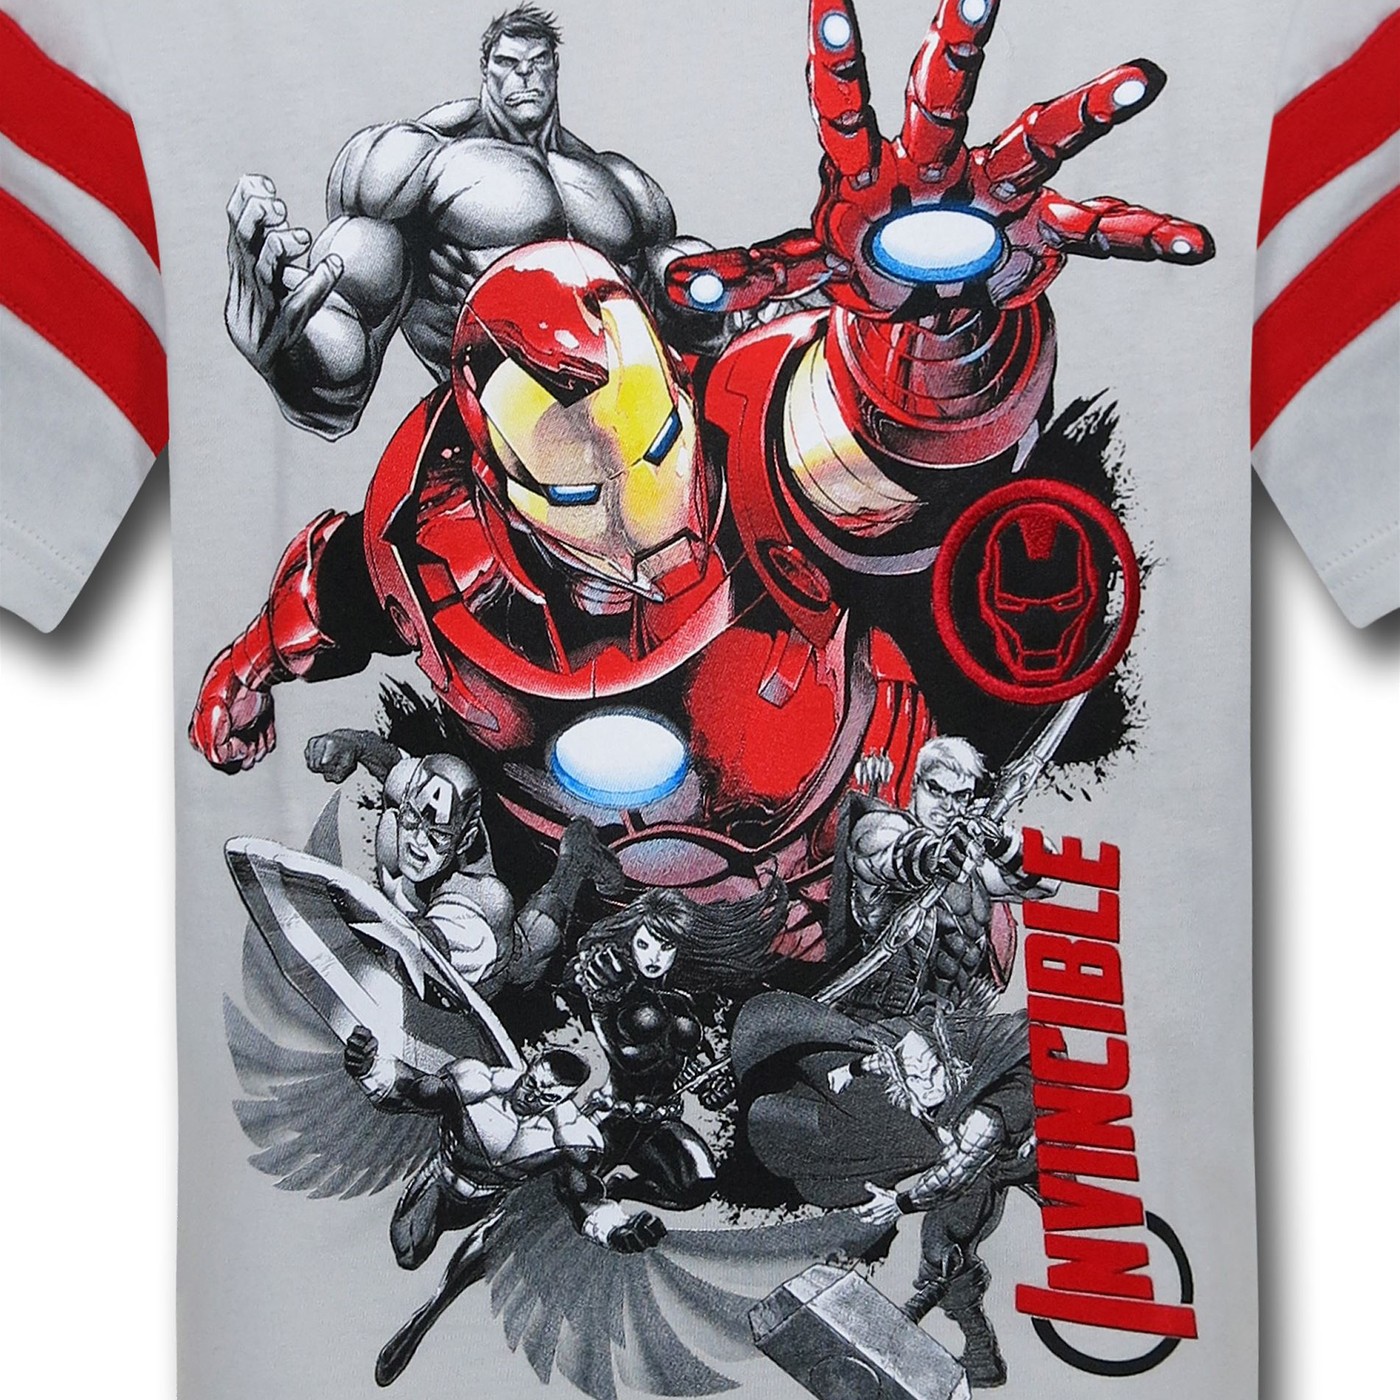 Avengers Iron Man & Friends Kids T-Shirt